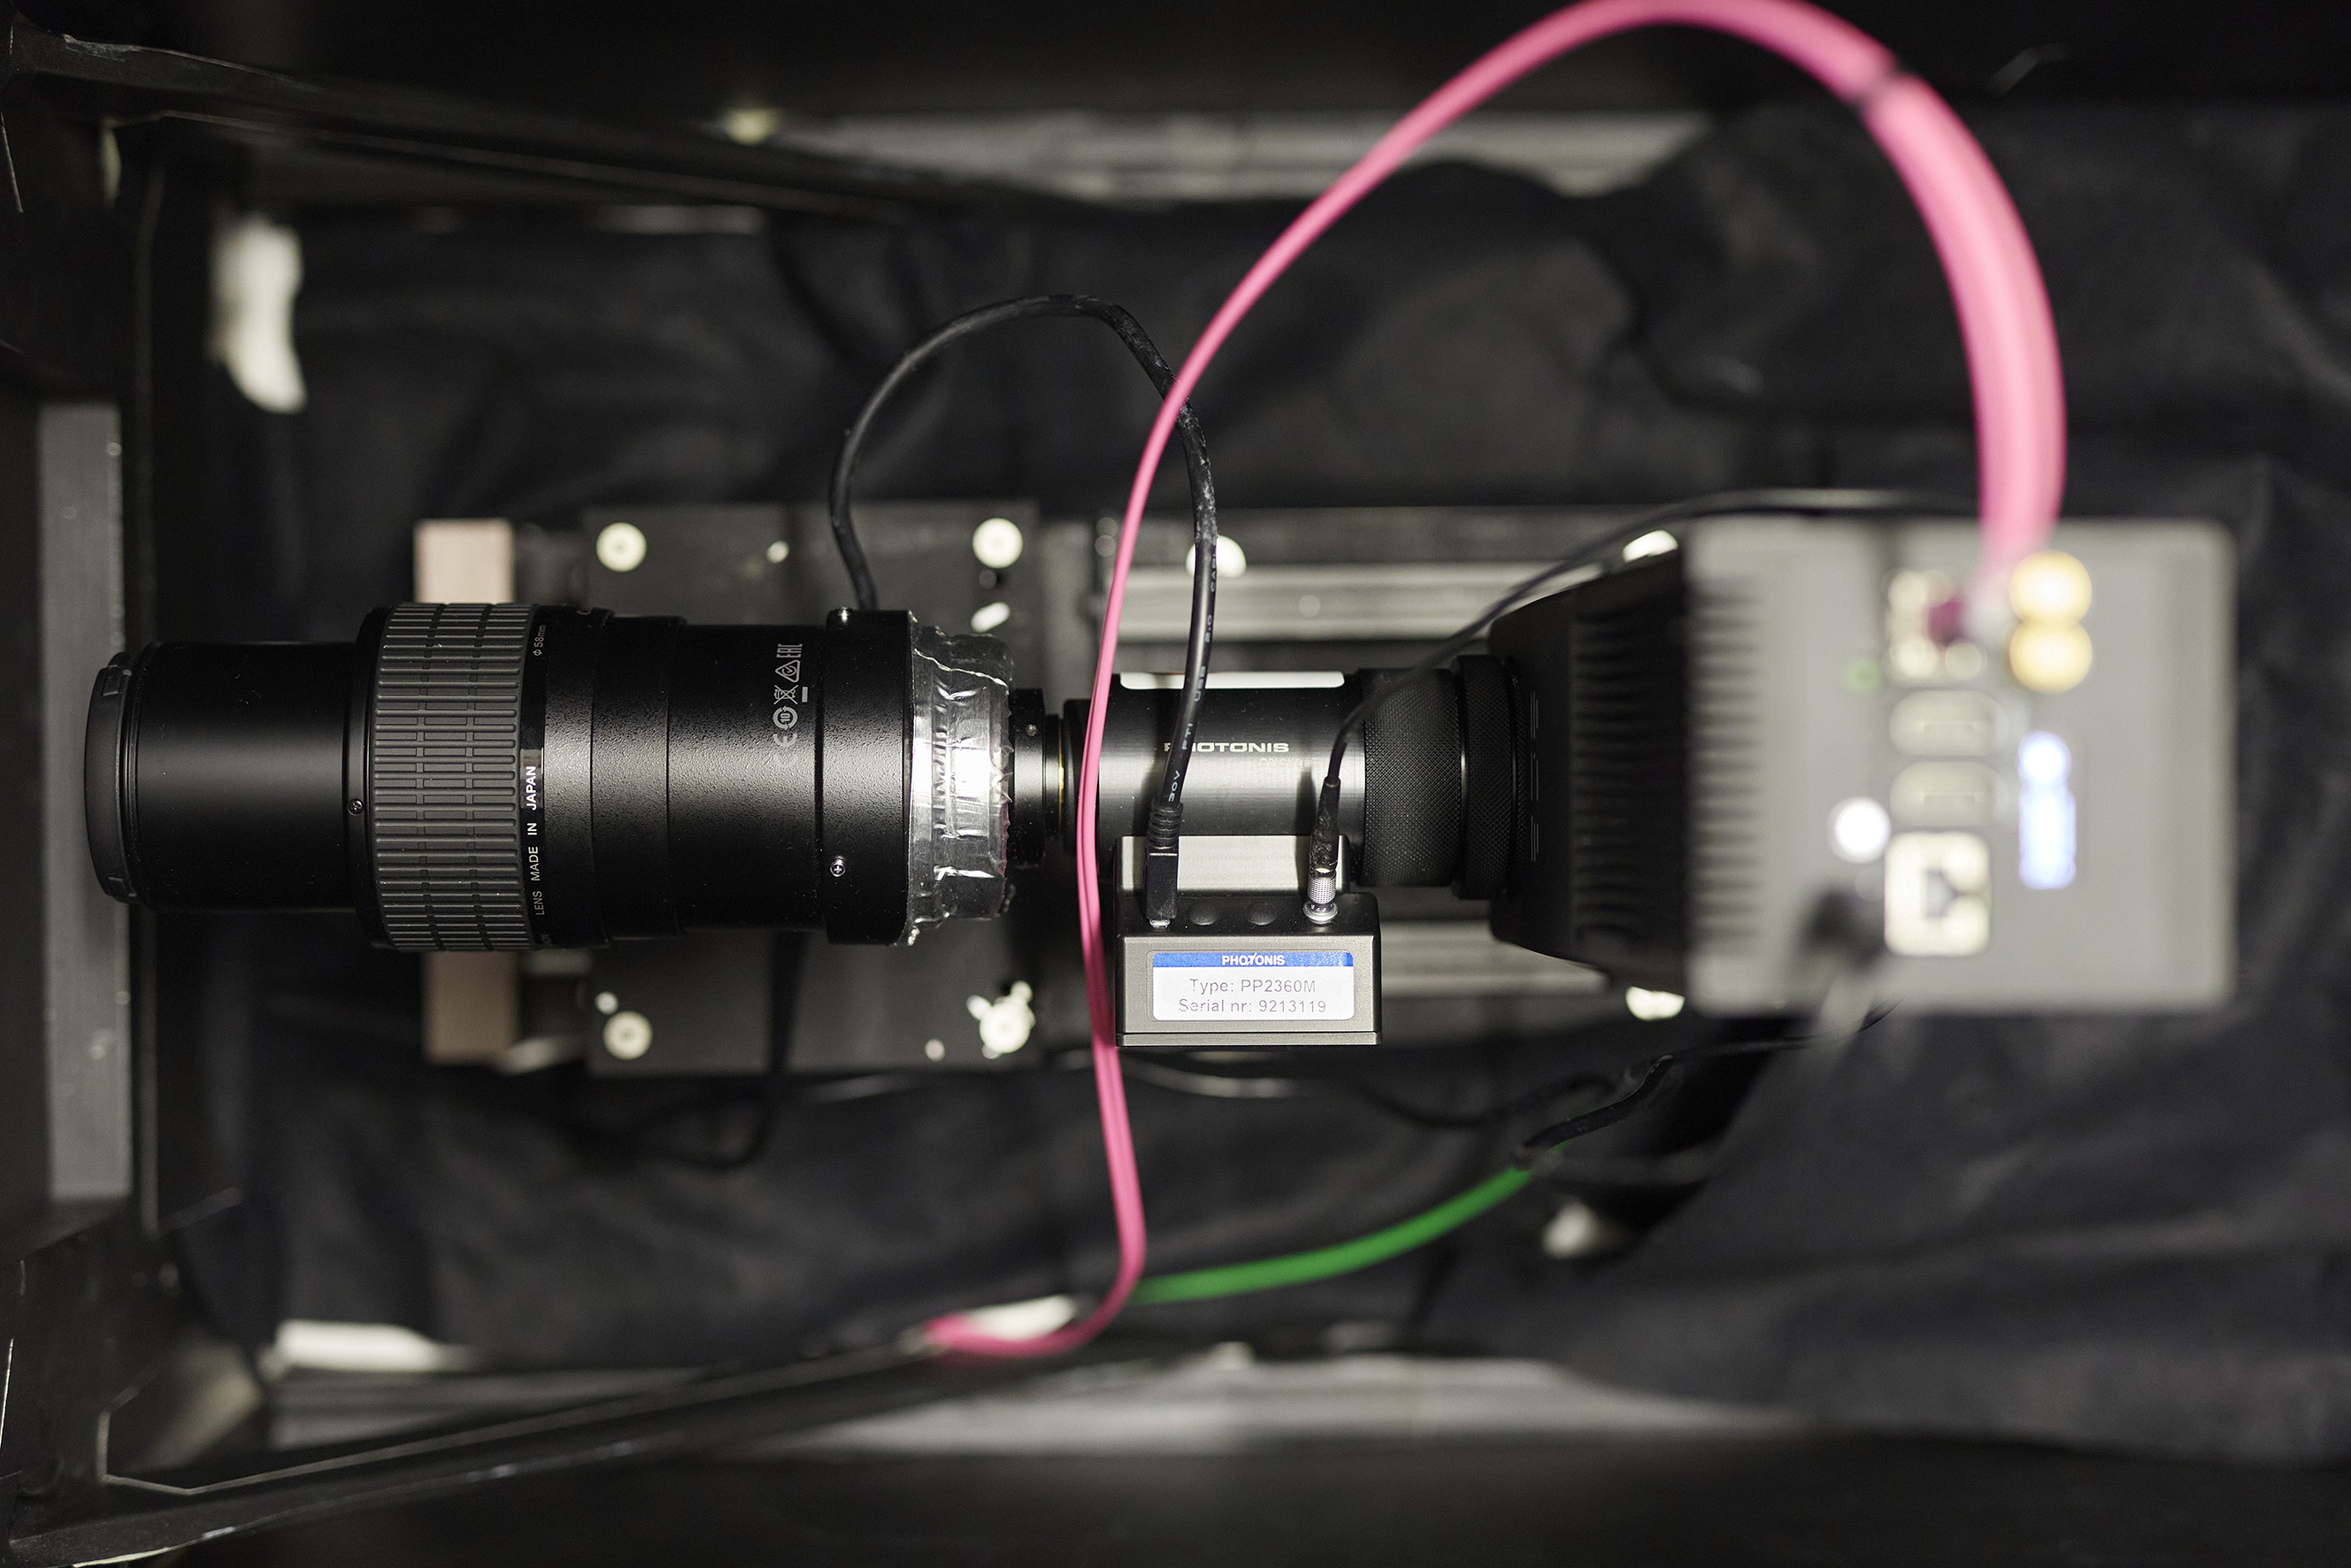 Kamera mit Bildverstärker und Zoom-Objektiv. Das pinkfarbene Kabel schickt die Signale von bis zu 80 Millionen aktivierter Pixel pro Sekunde zur Datenauswertung an einen Hochleistungs-PC. 